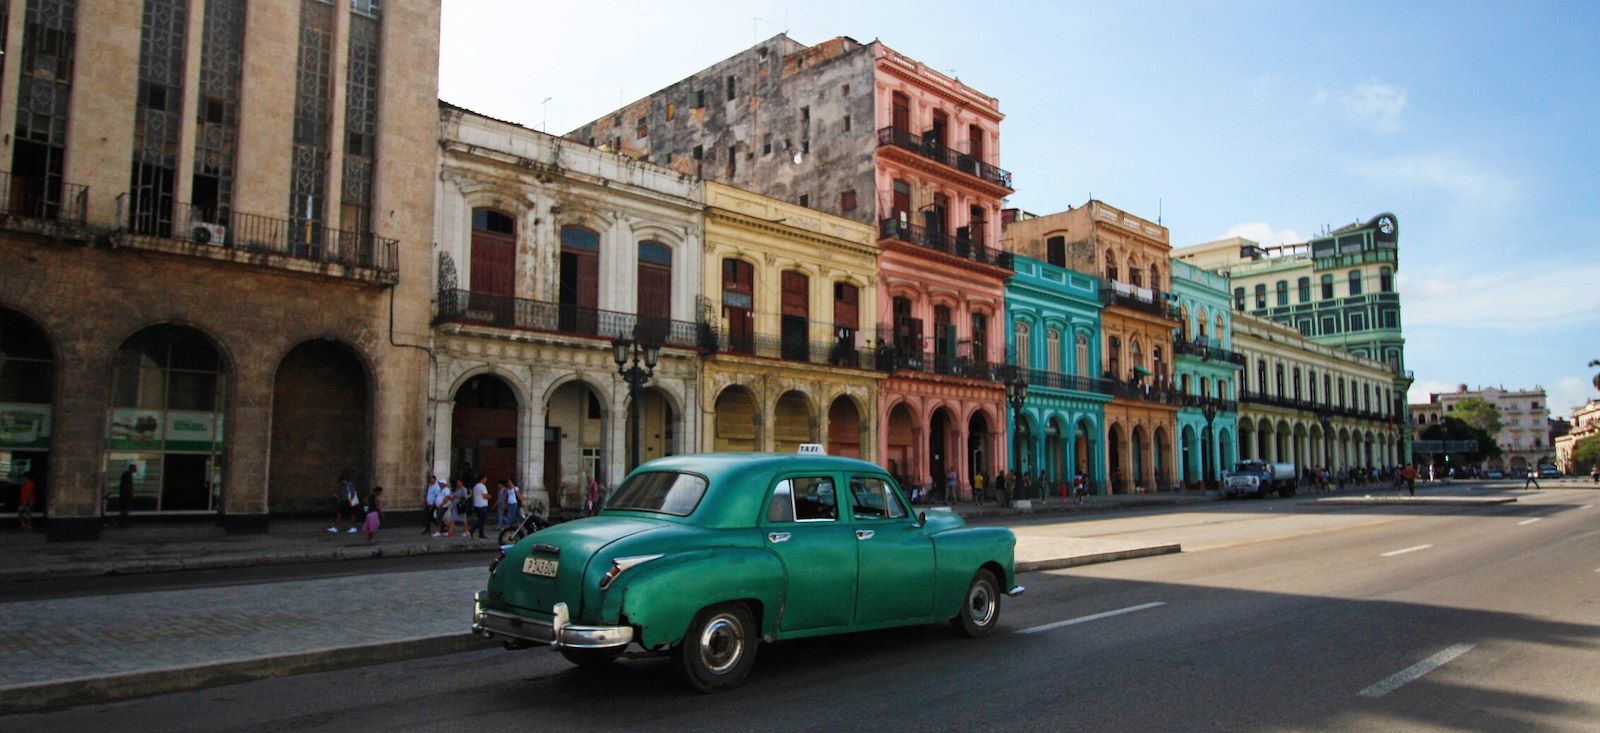 Voyage en véhicule : Fidel à Cuba